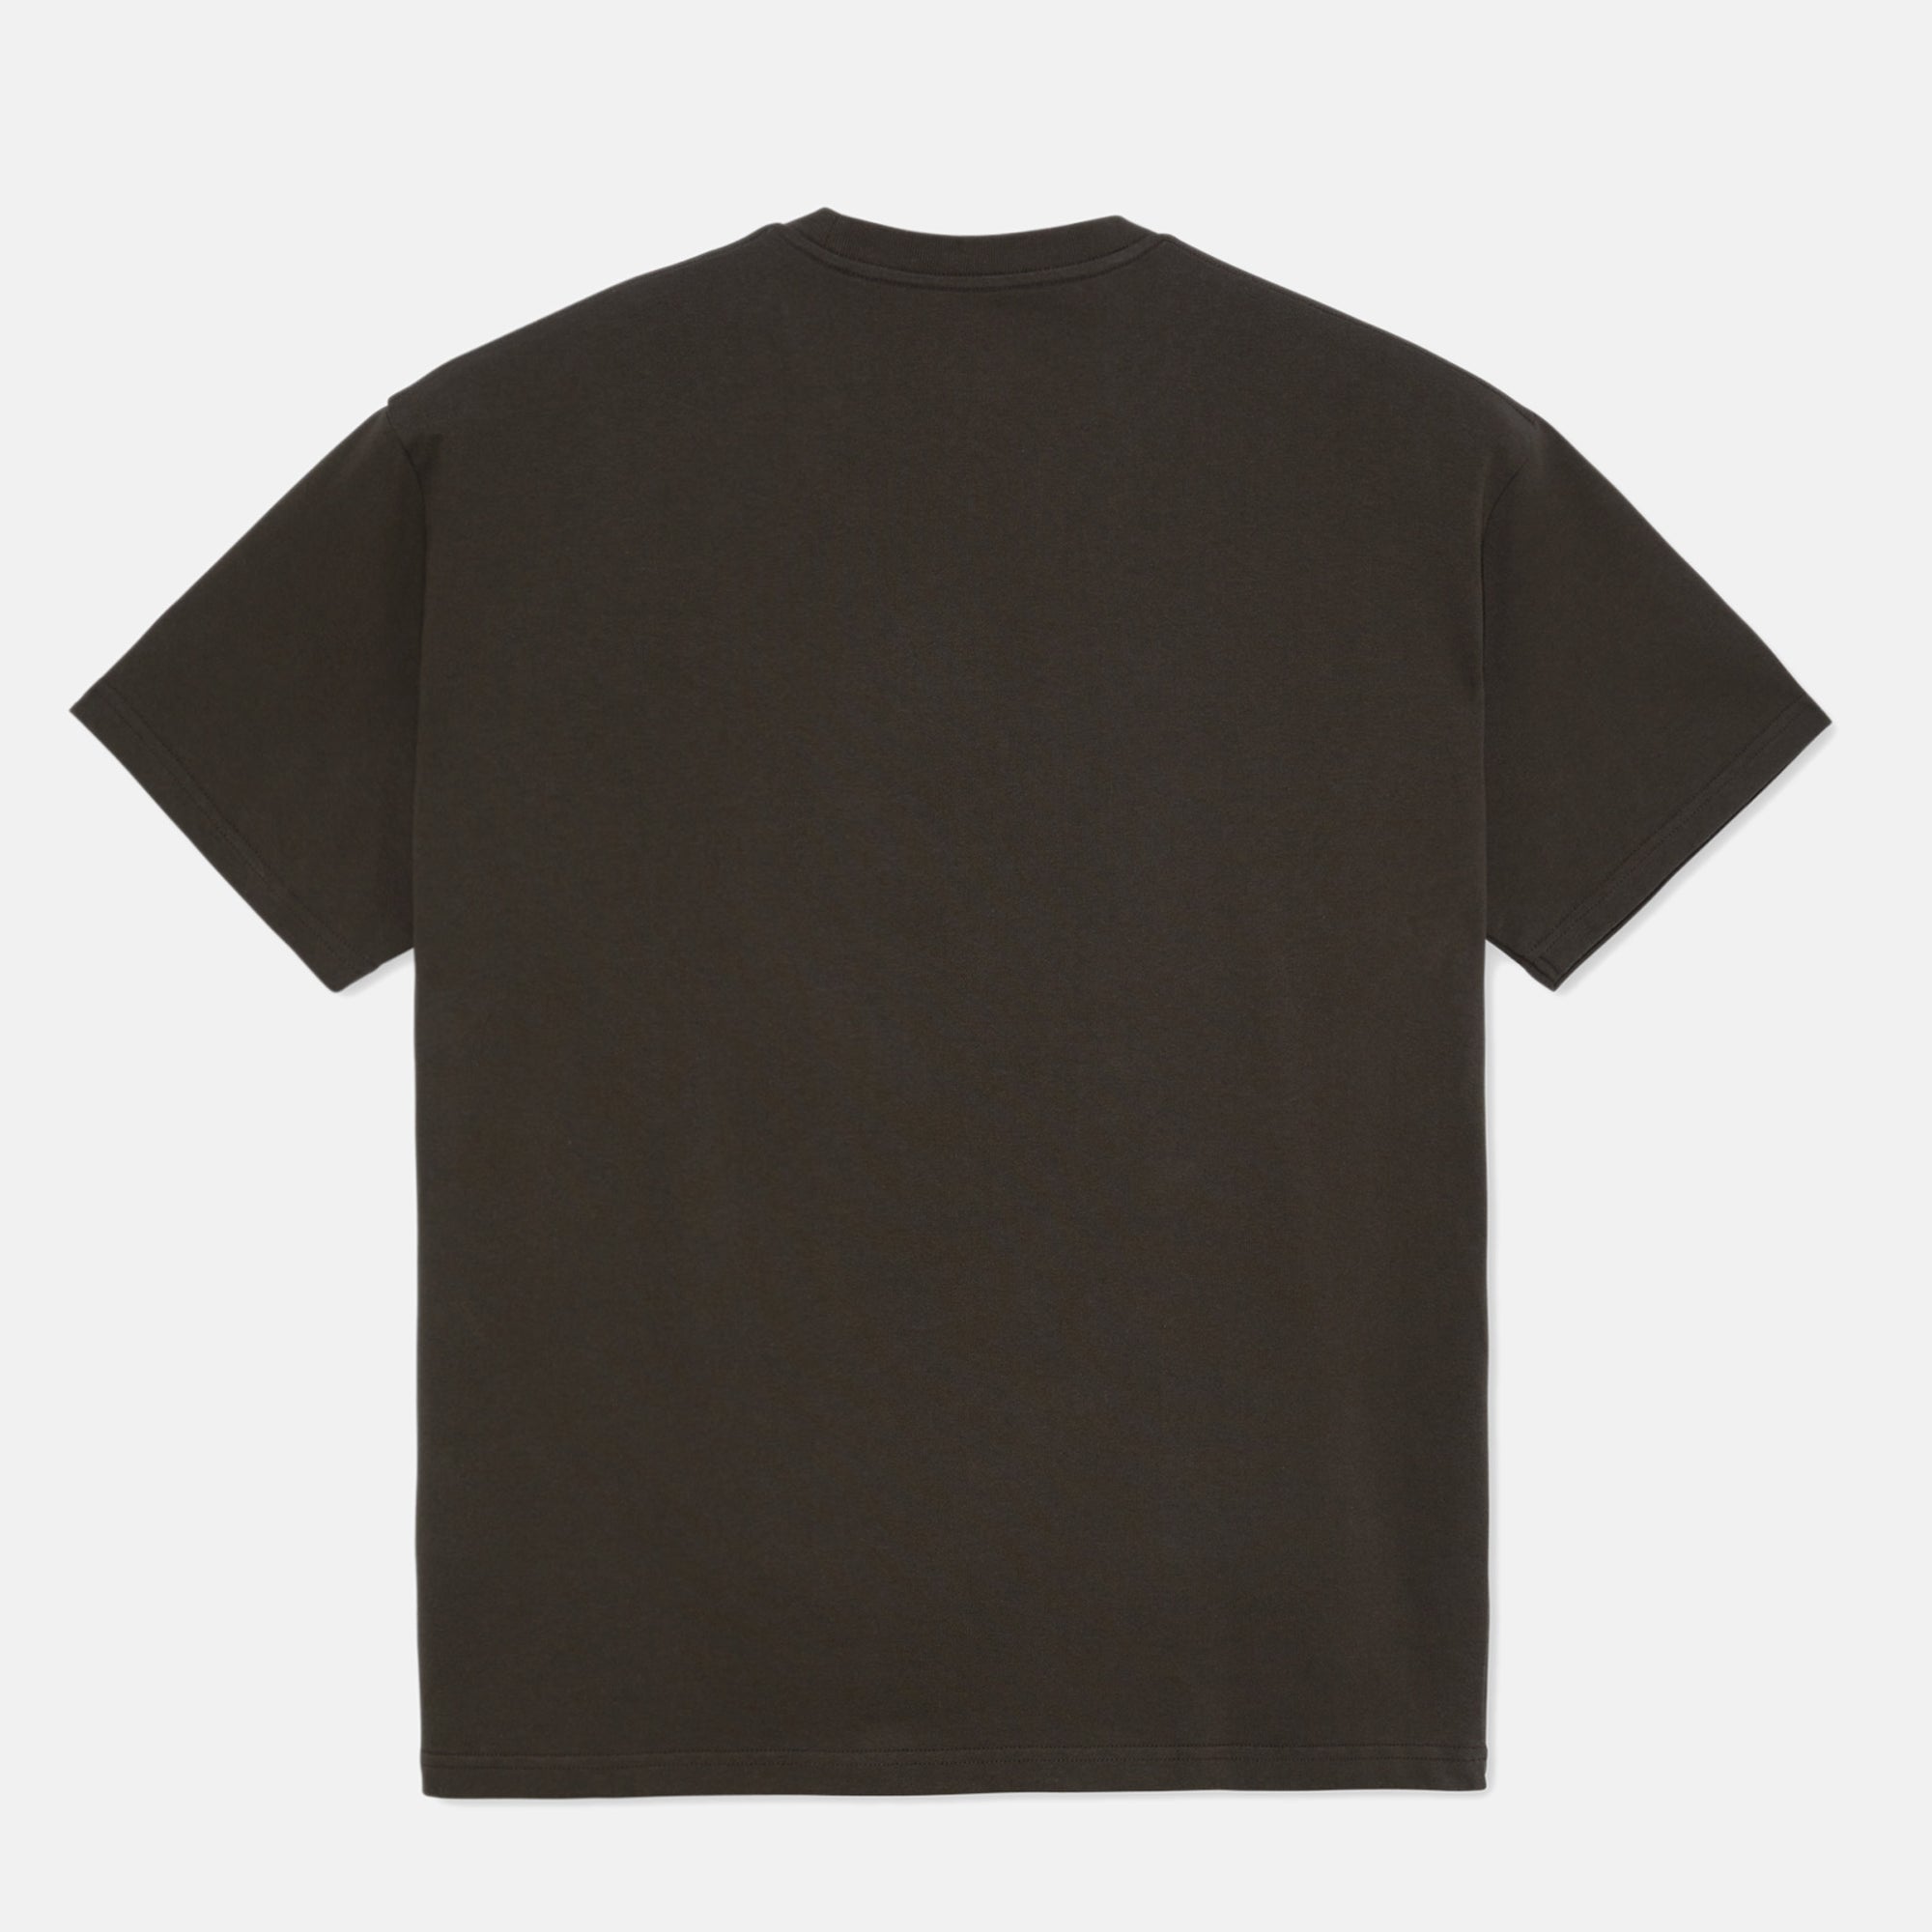 Polar Skate Co. - Meeeh T-Shirt - Brown